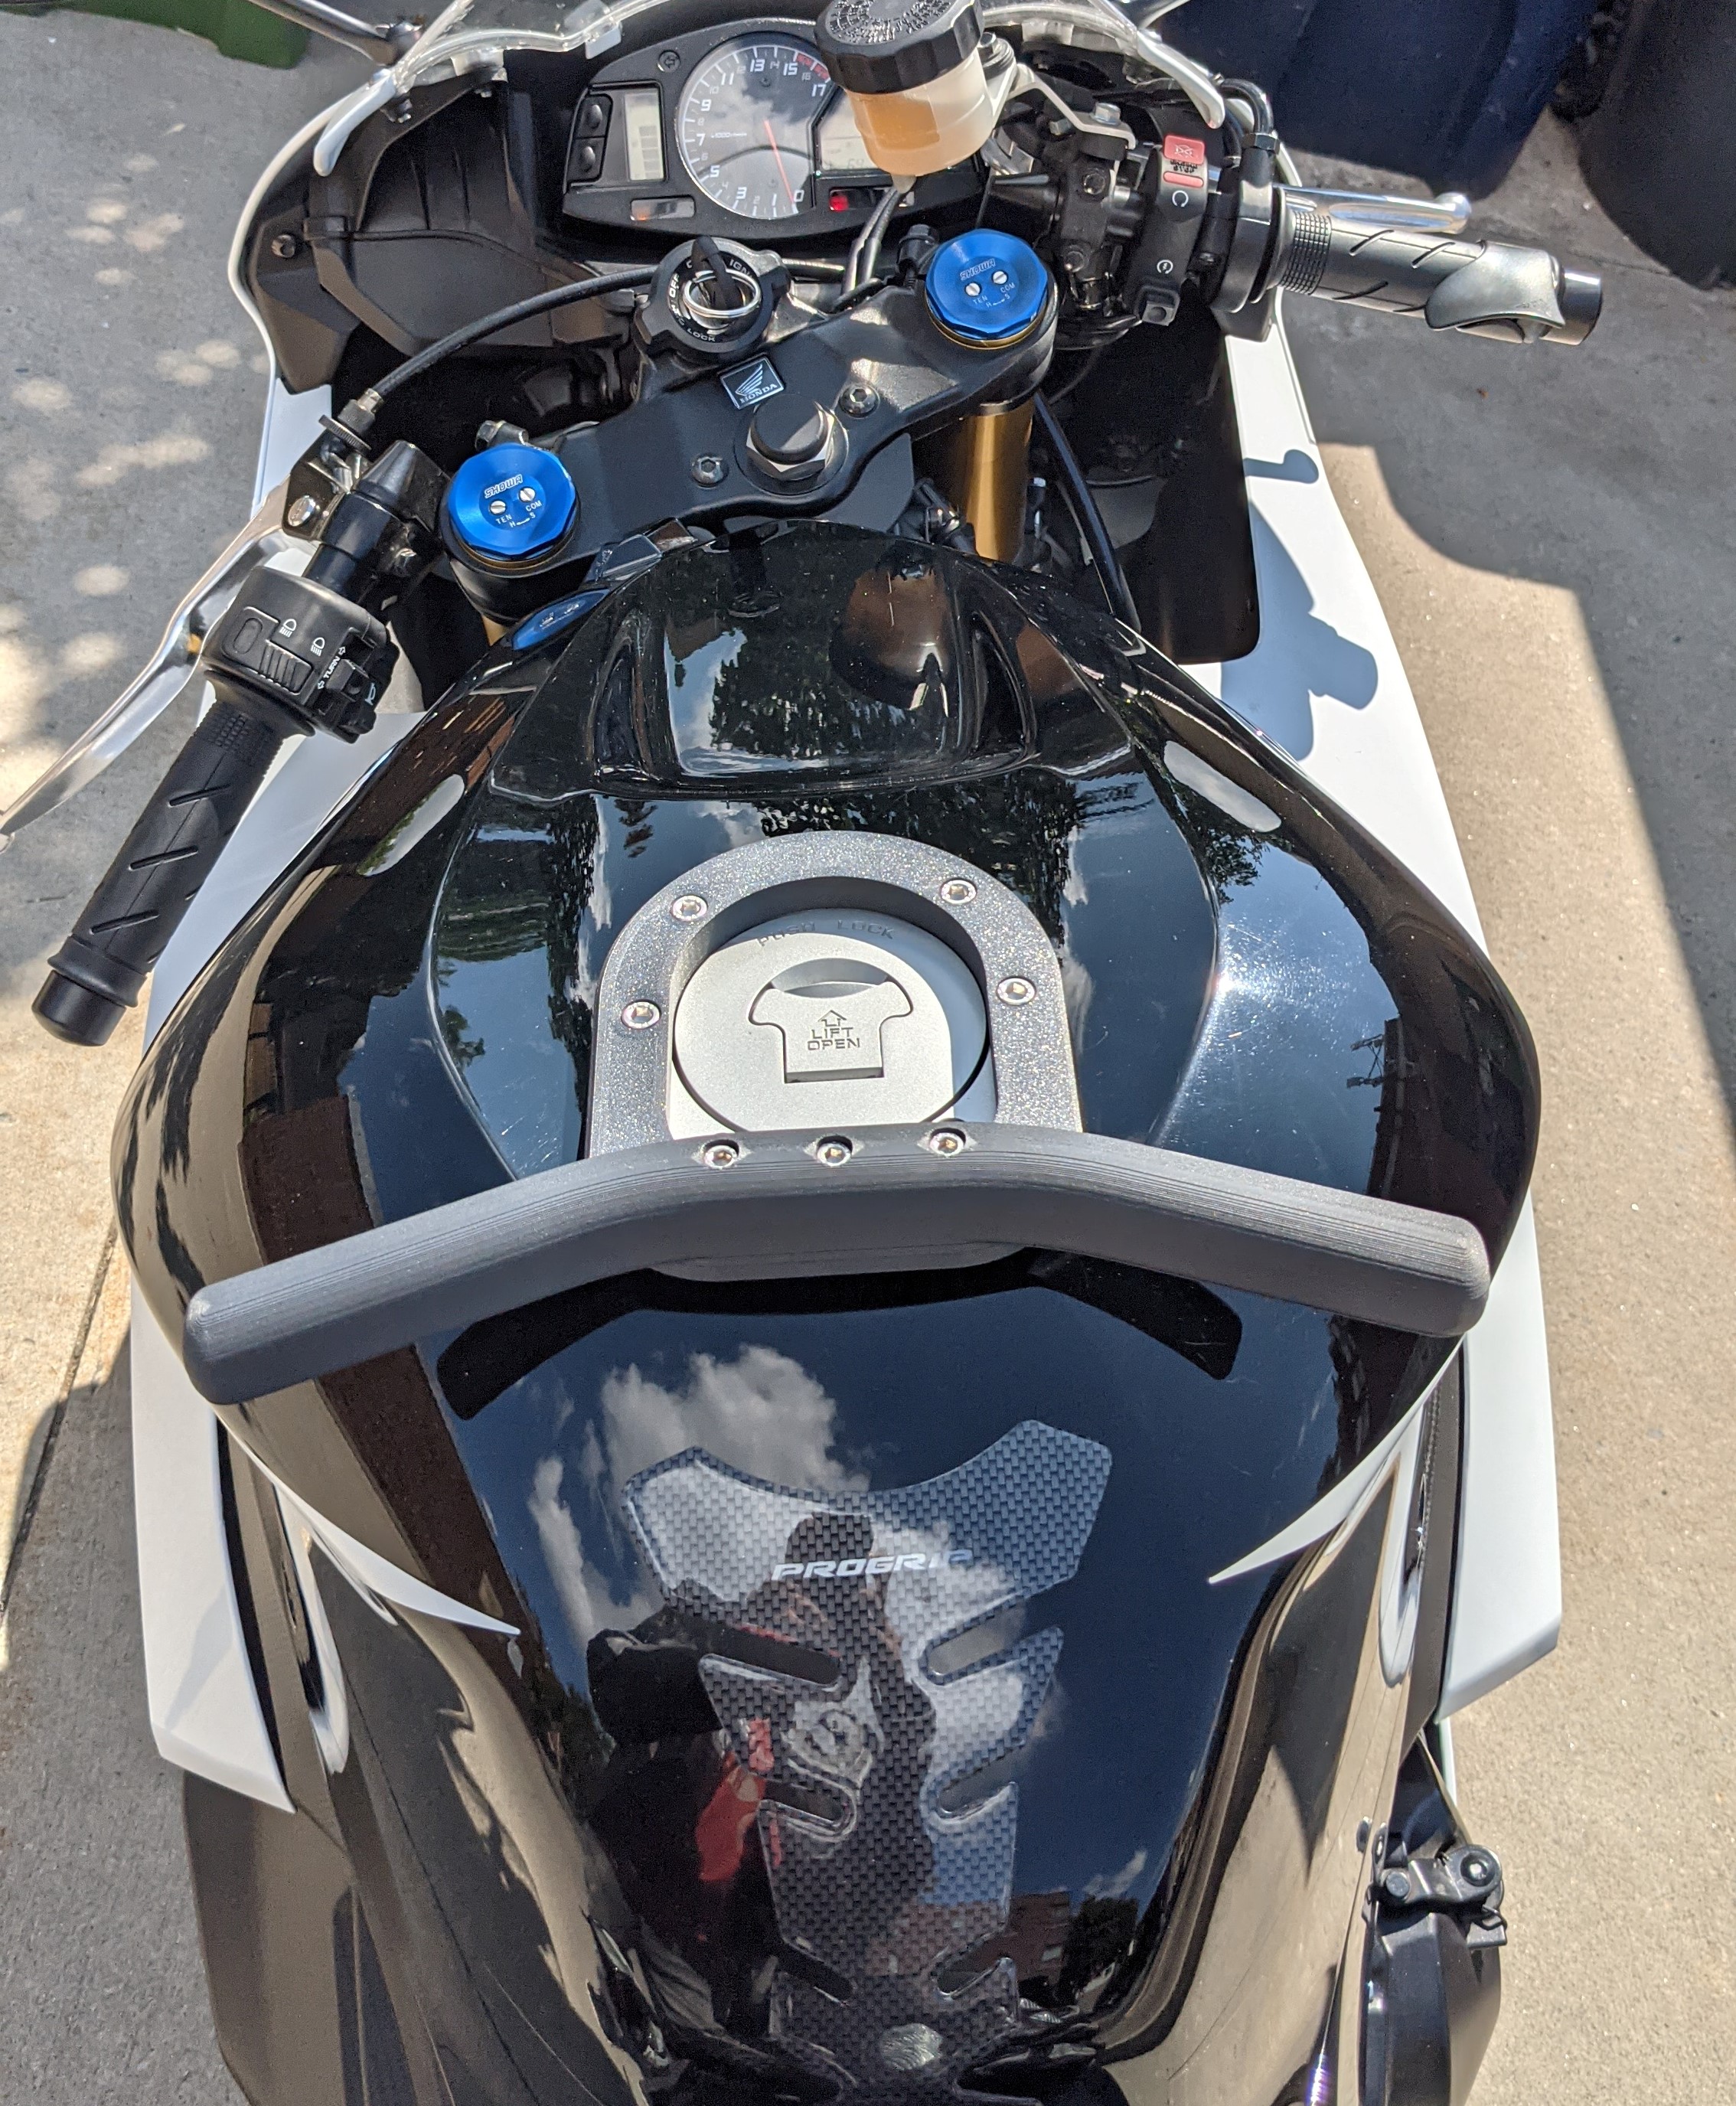 Tank Mounted Motorcycle Pillion Grip, Passenger Grab Bar